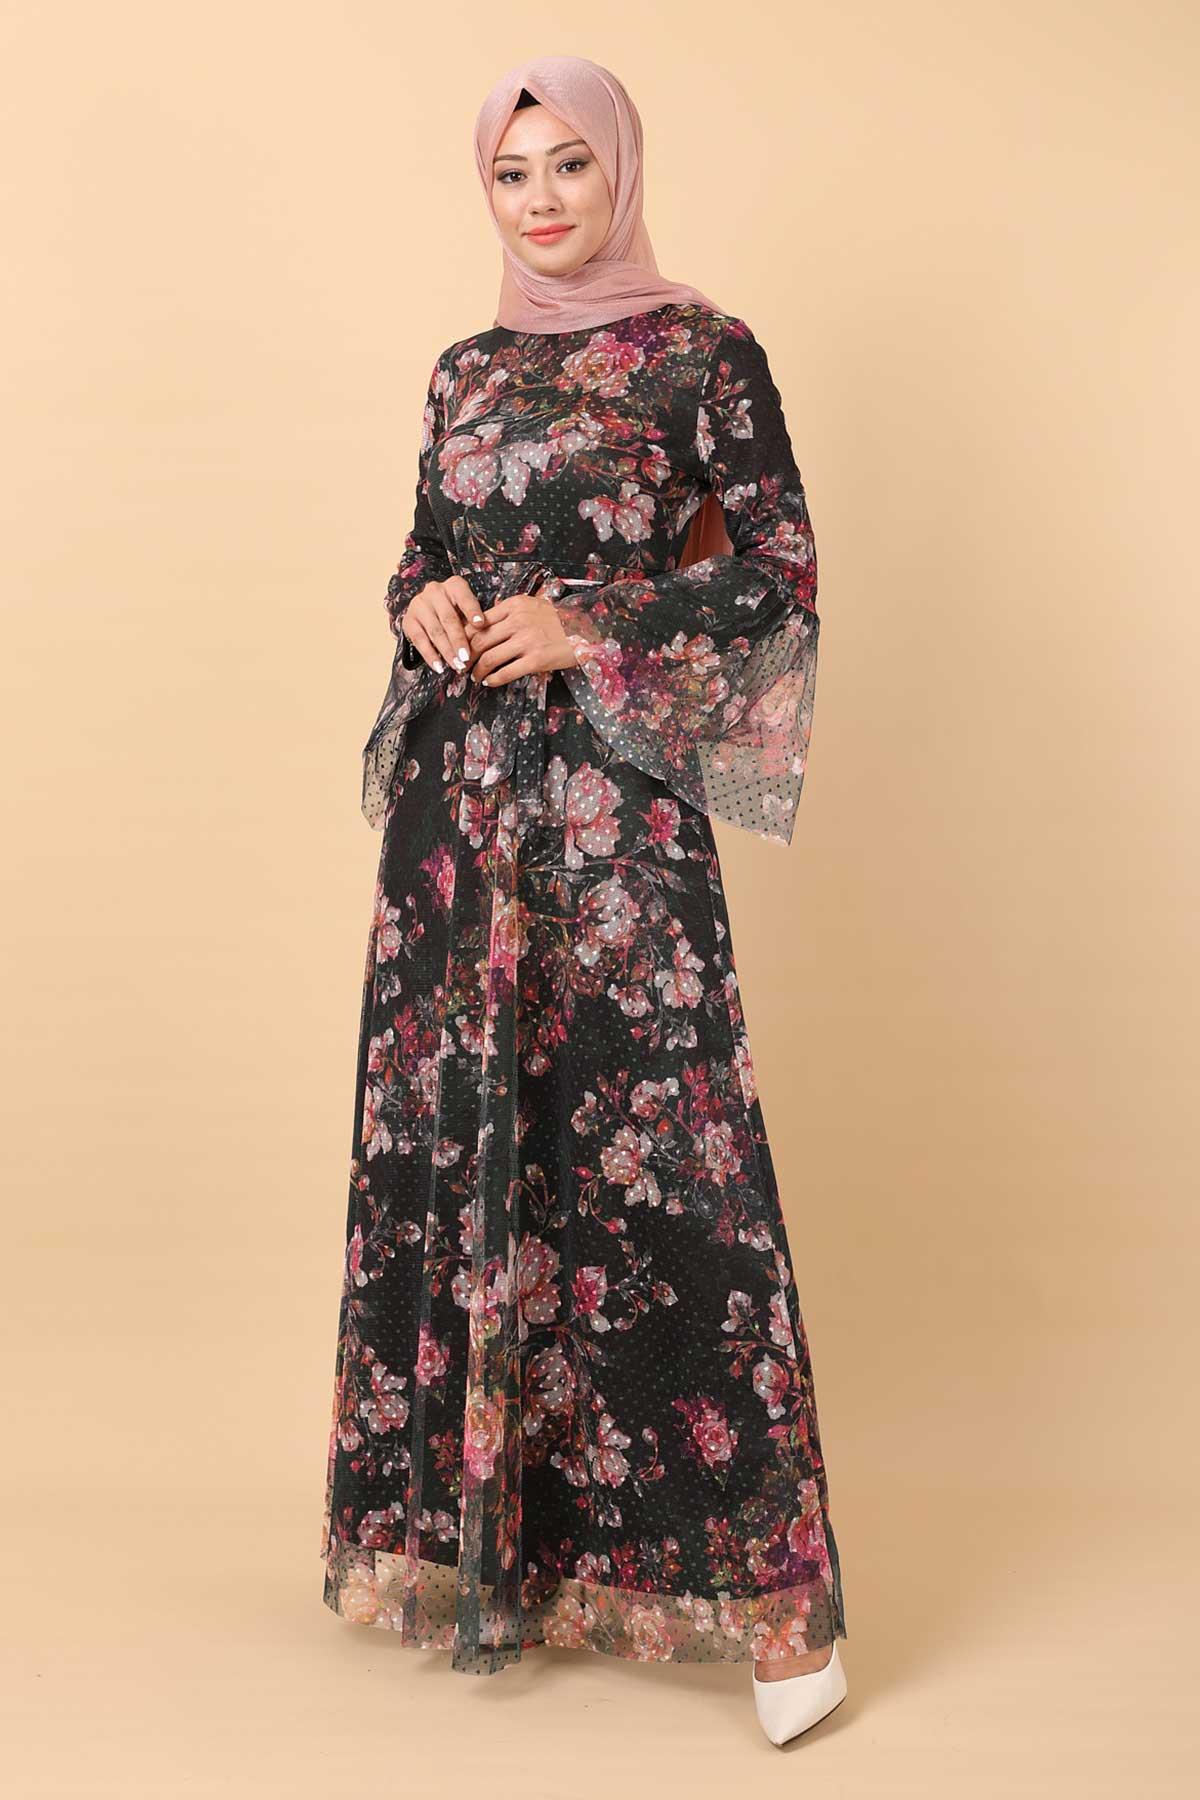 Çiçekli Tül Elbise Siyah 12222 - Modamihram